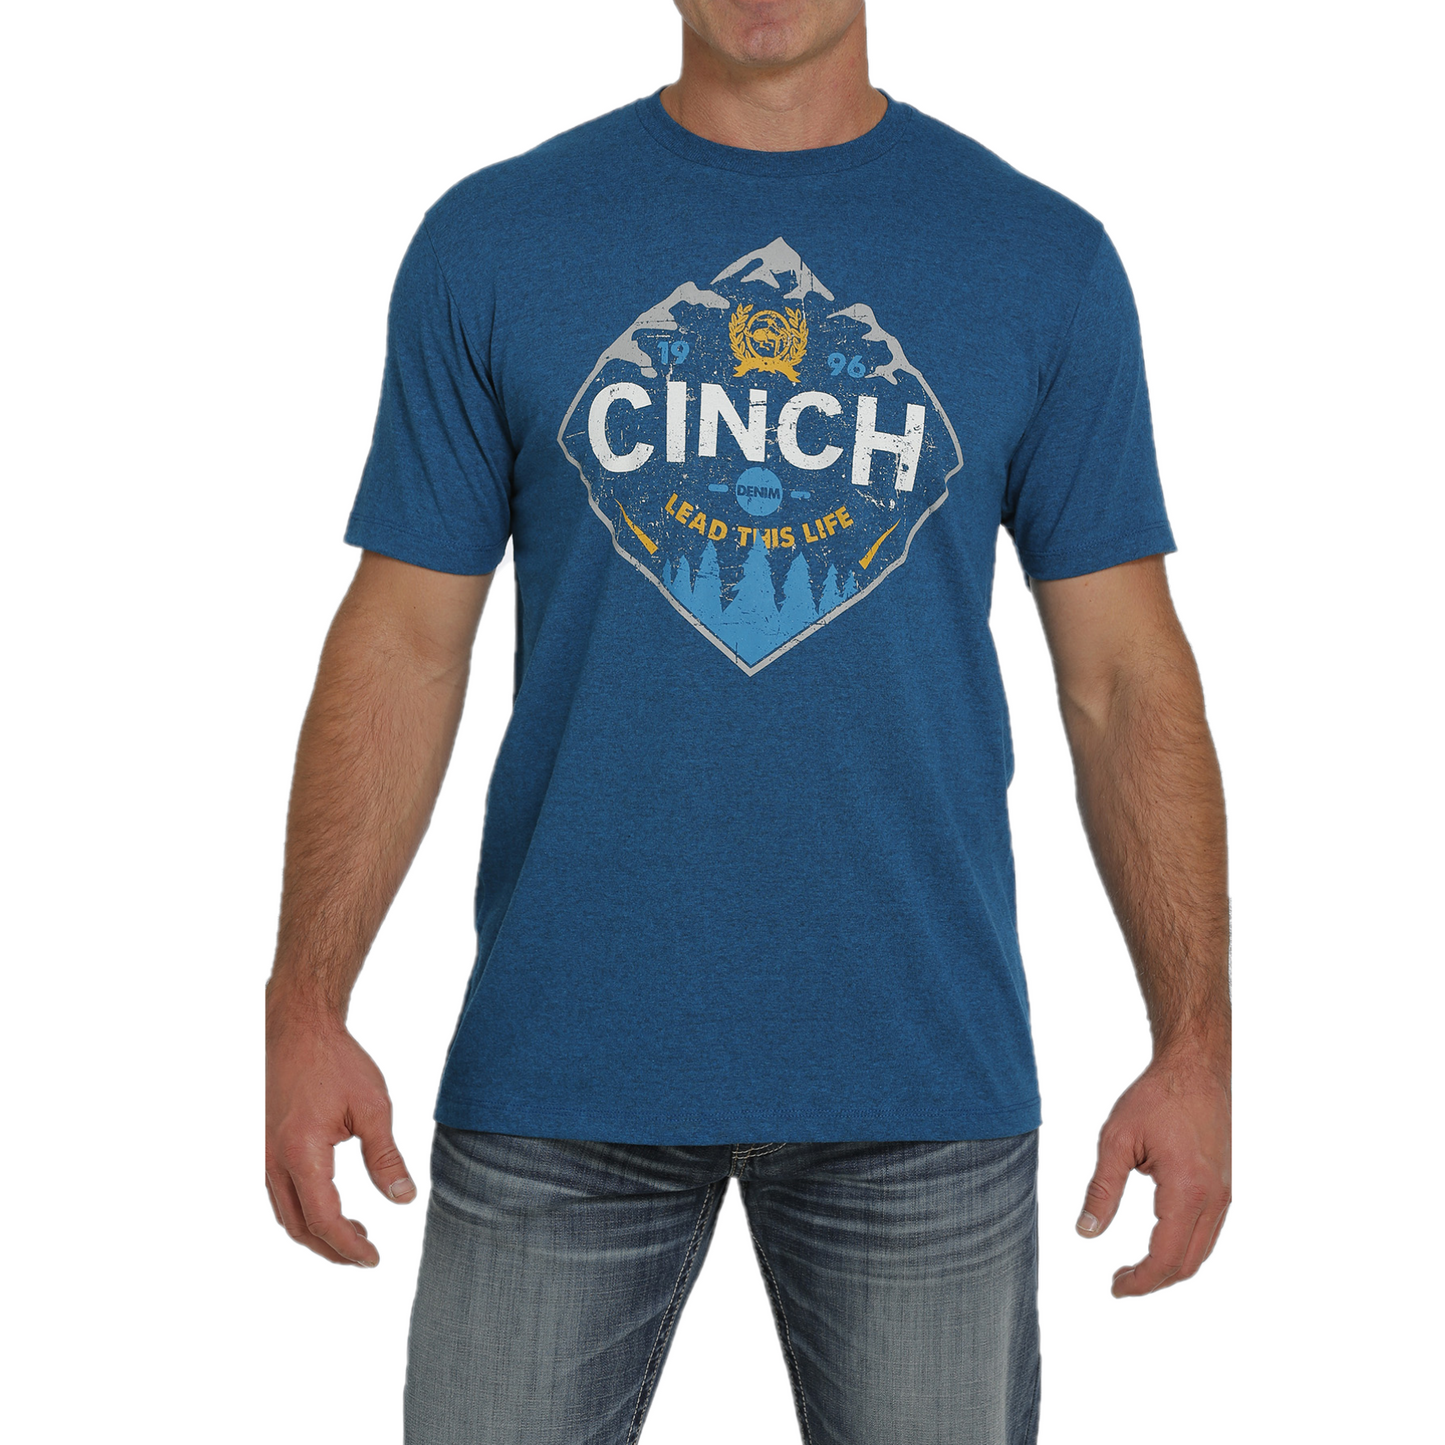 Cinch® Men's Teal Mountain Logo Graphic T-Shirt MTT1690510